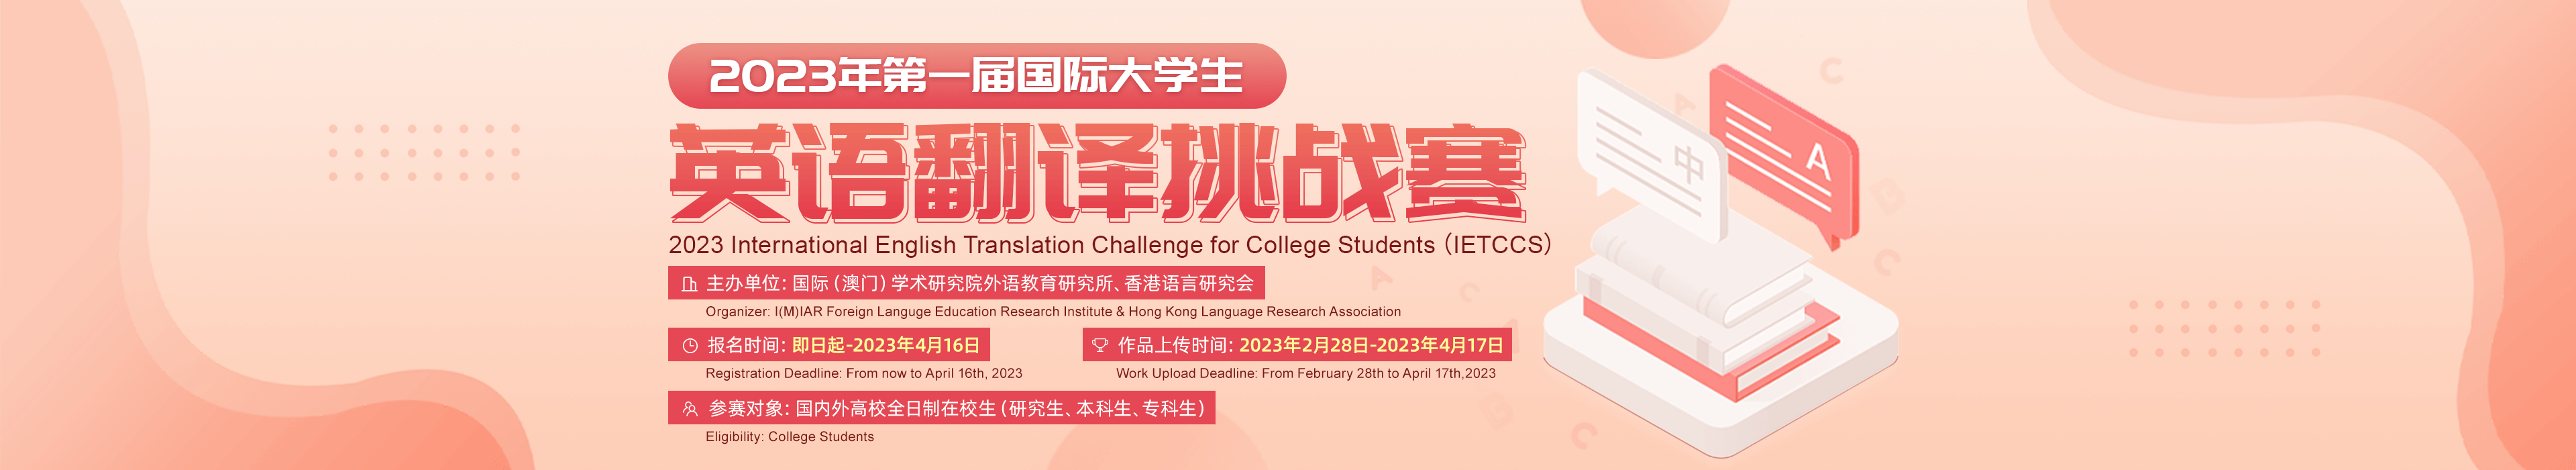 2023年第一届国际大学生英语翻译挑战赛-首页banner1920x350px.png